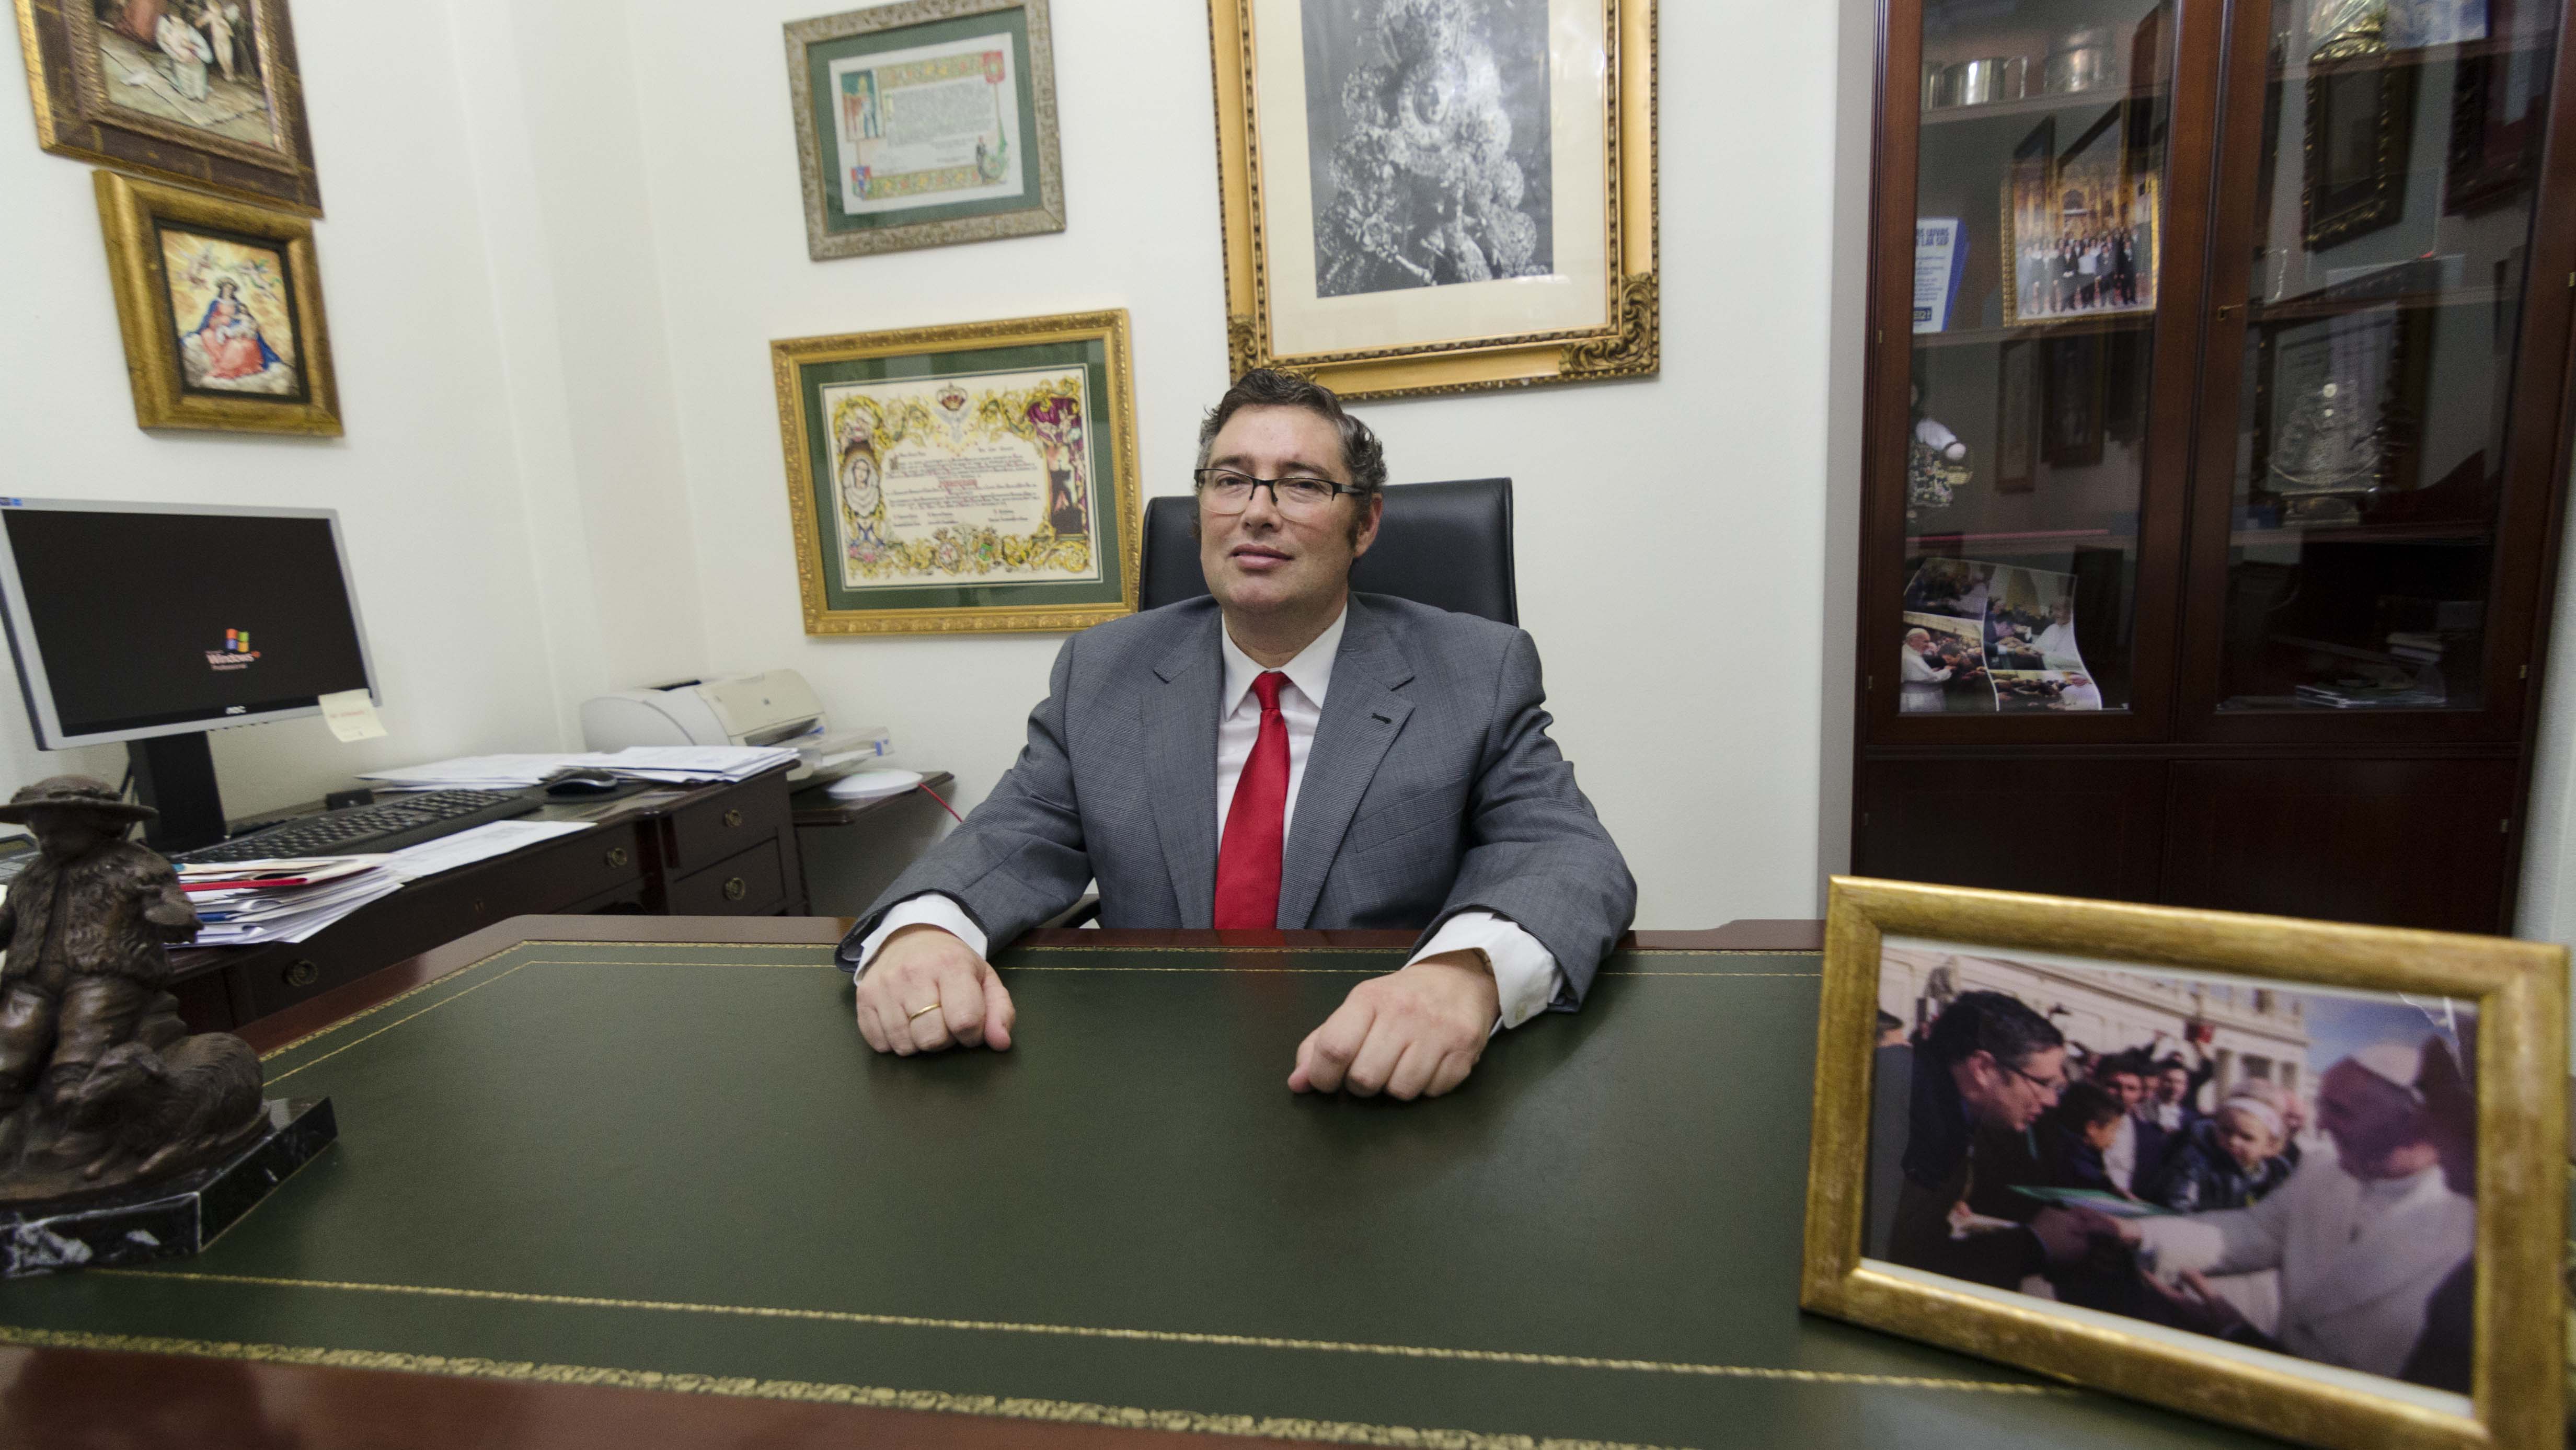 Juan Ignacio Reales recibe a ABC en su despacho en la casa hermandad de la Matriz almonteña